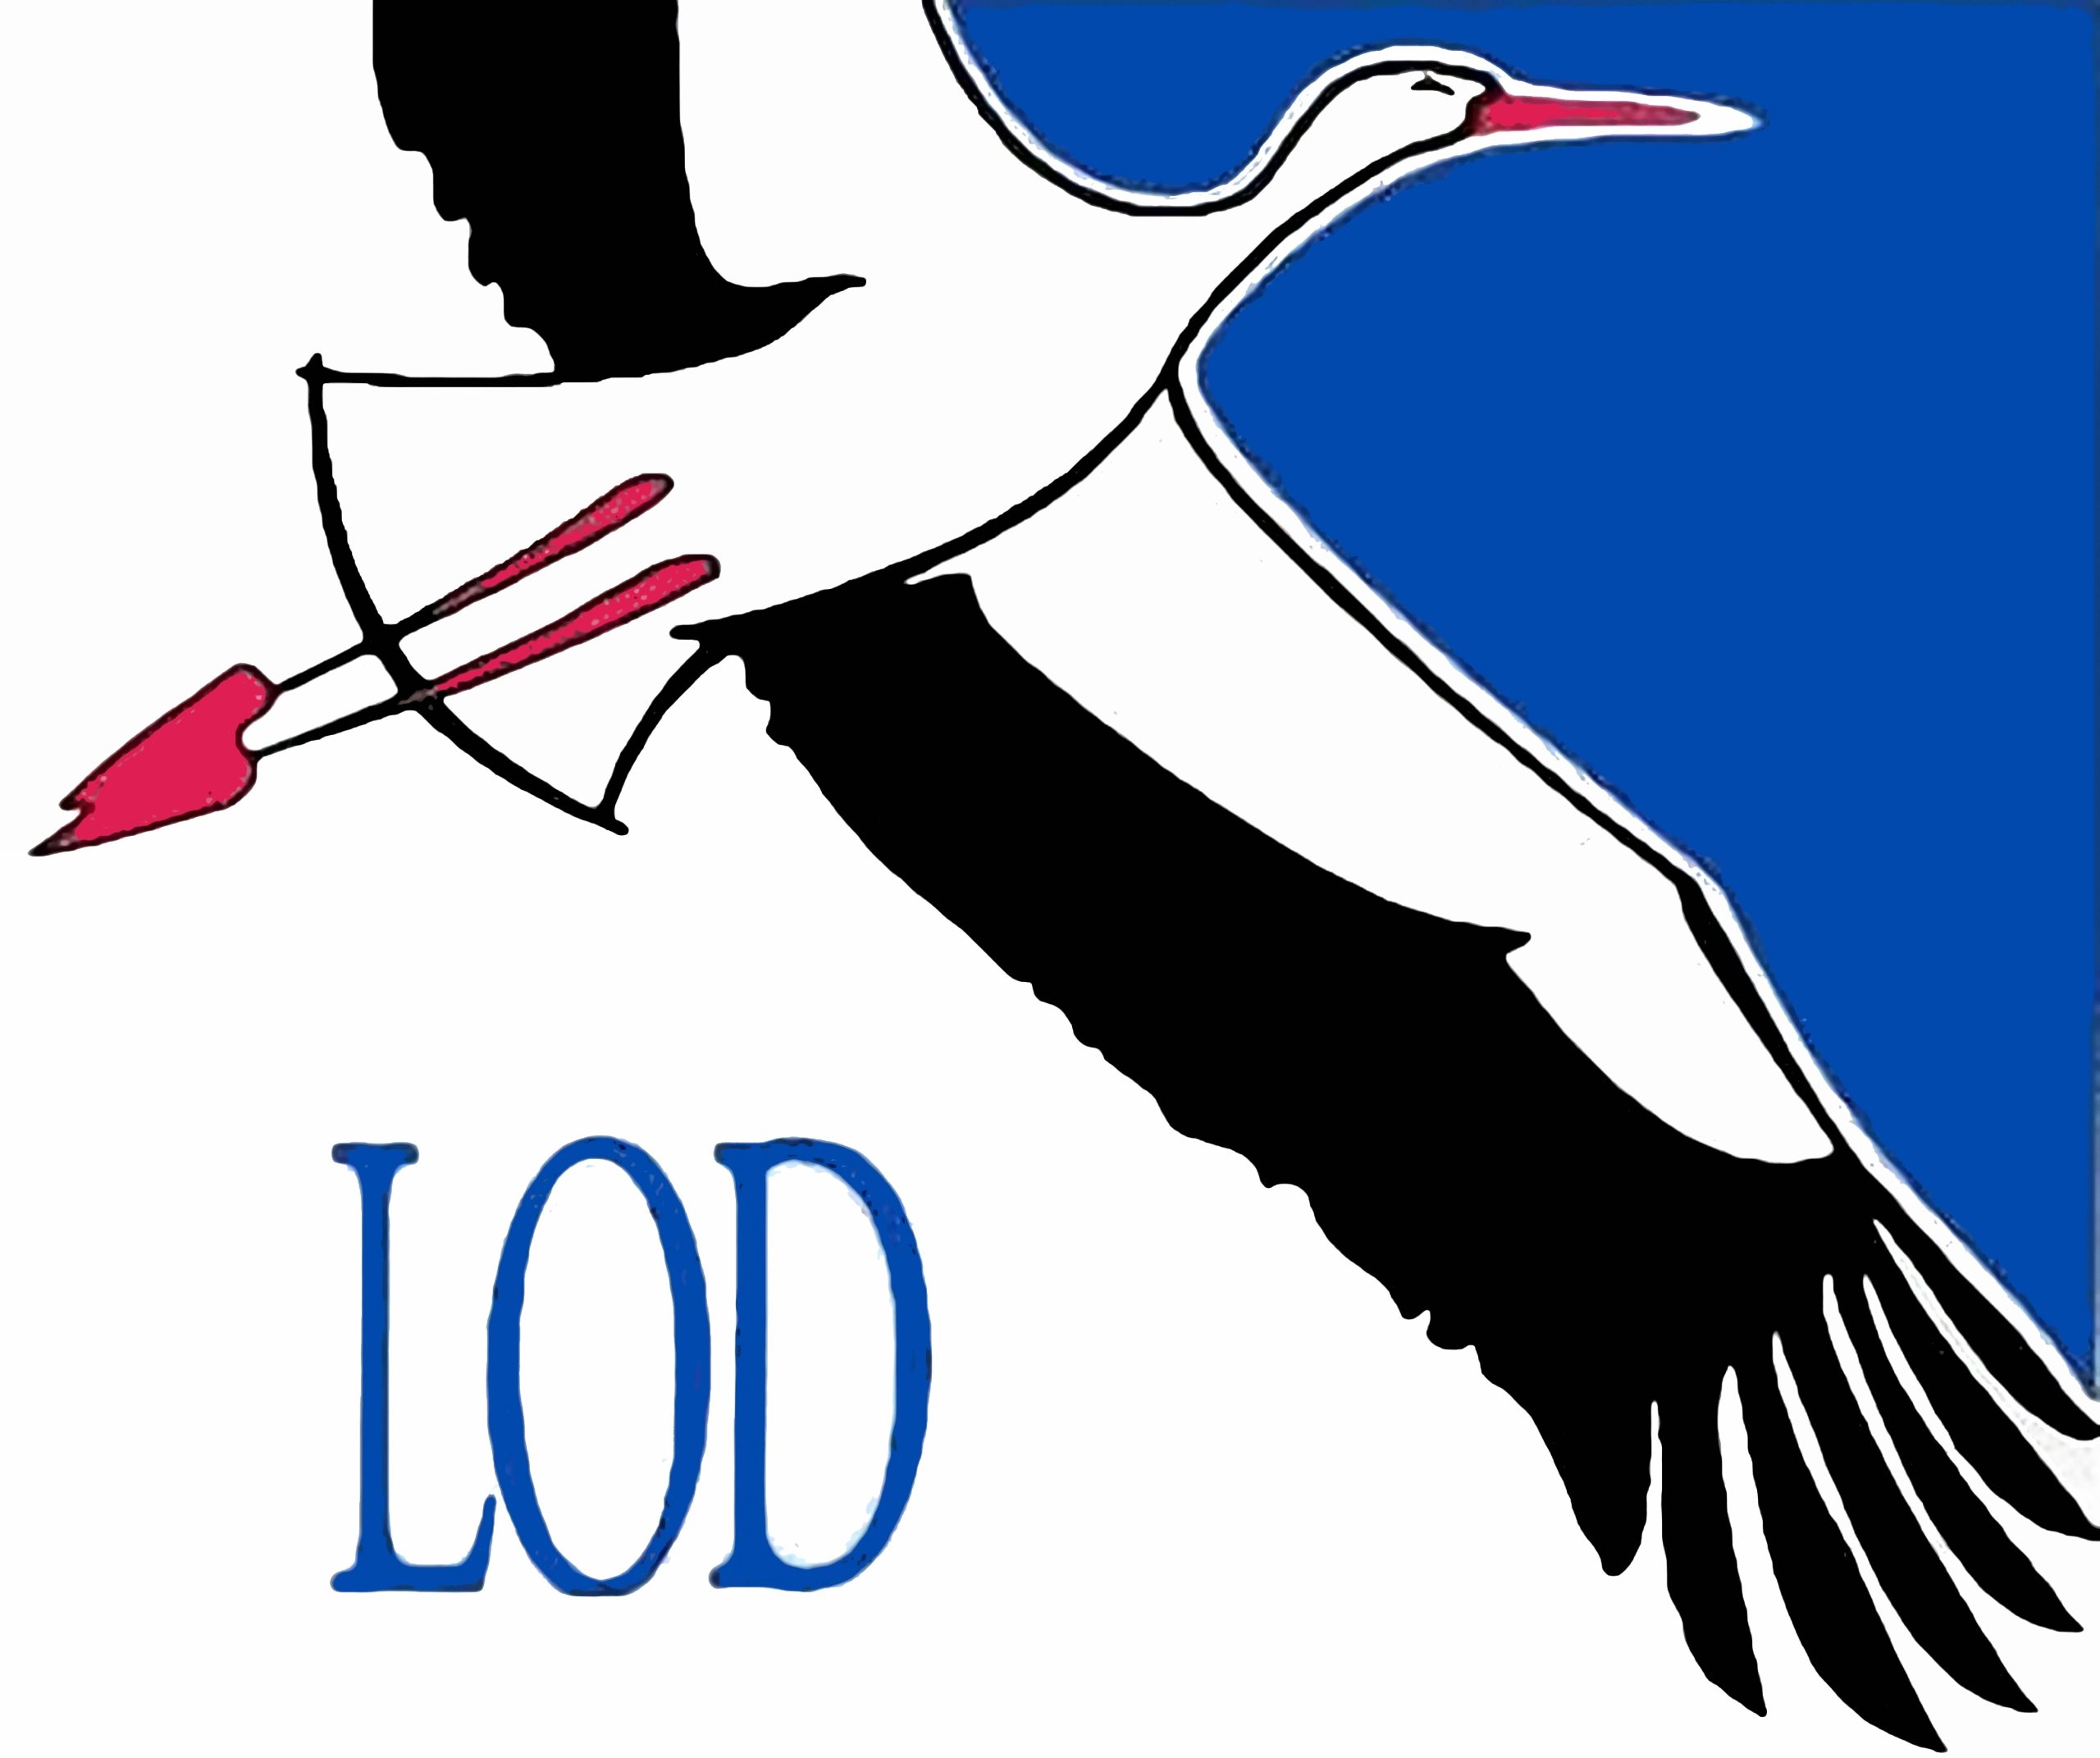 Lietuvos ornitologų draugijos logo